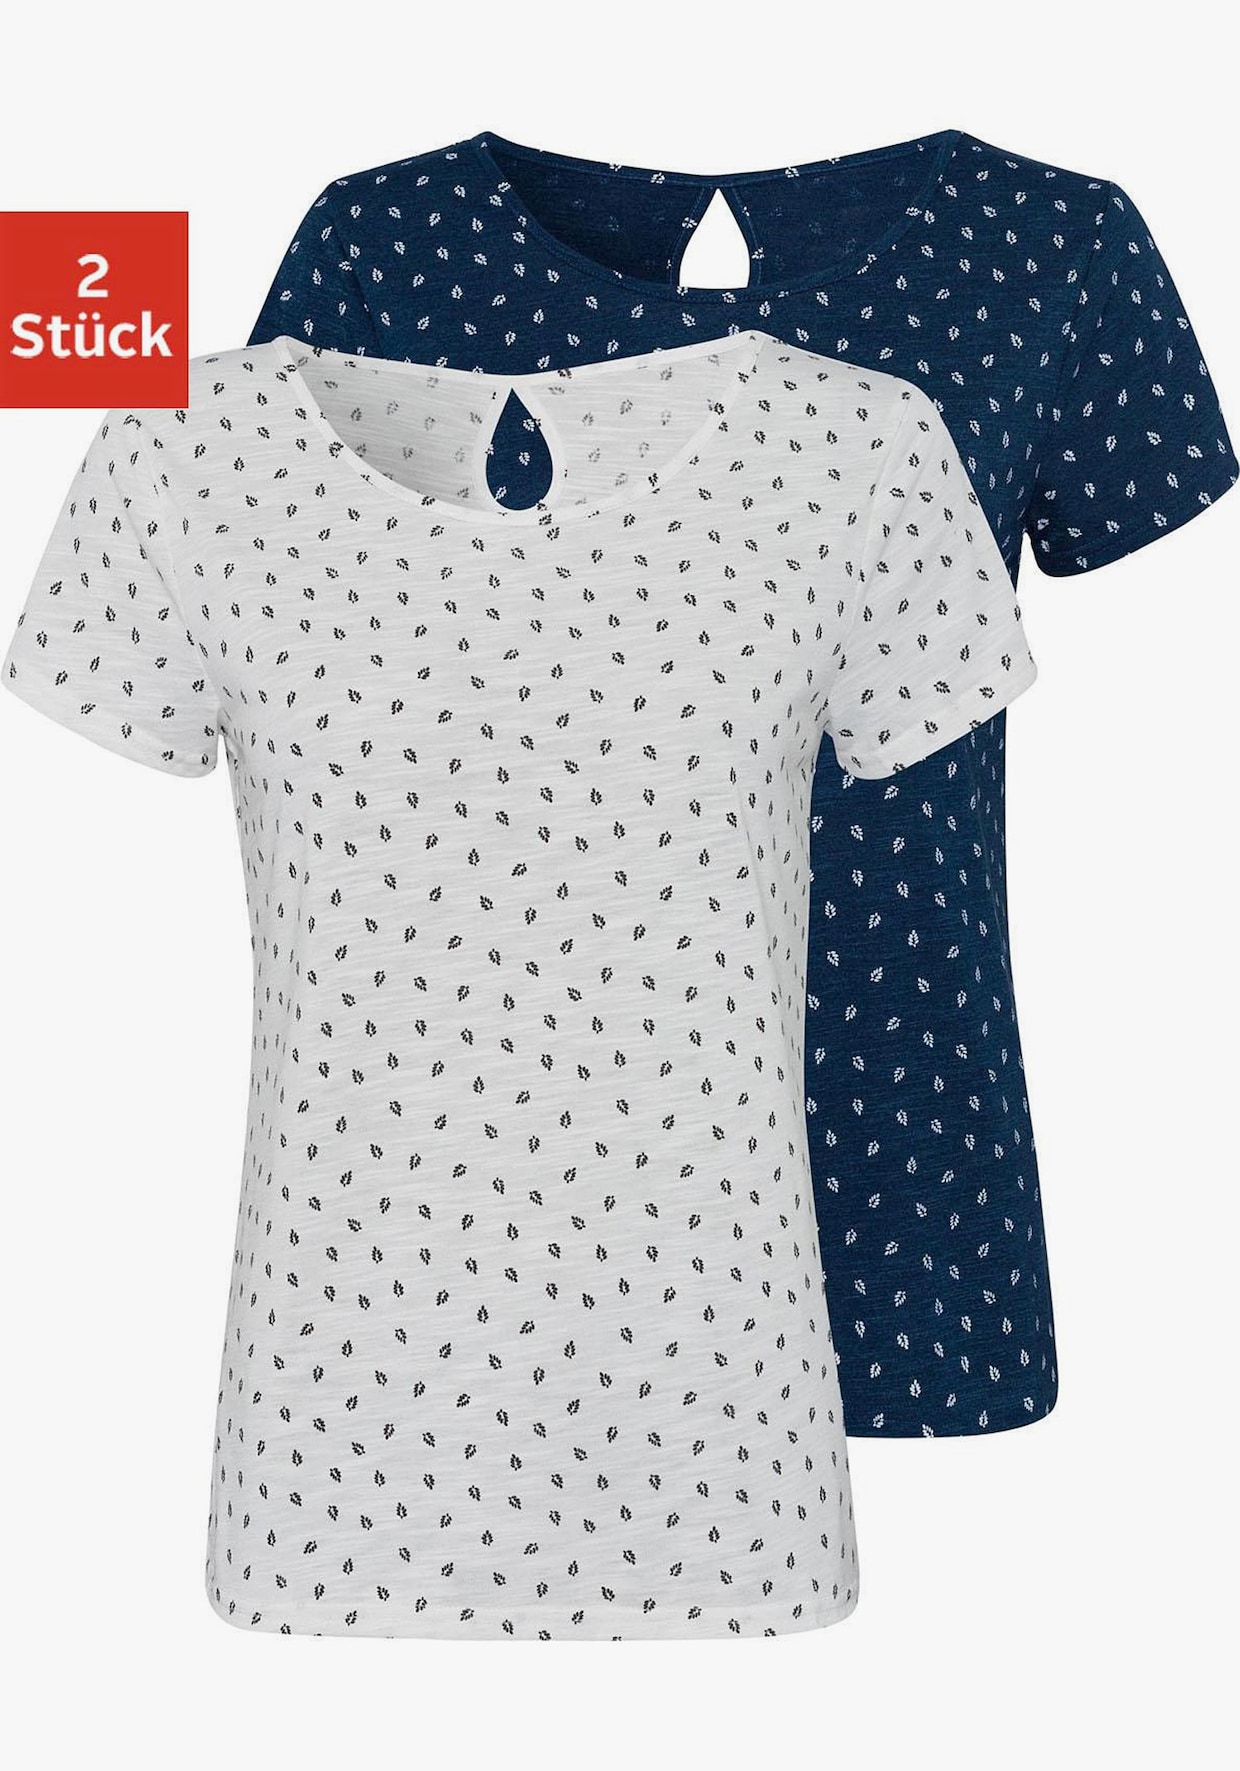 LASCANA T-Shirt - 1x navy-gemustert + 1x weiß-gemustert